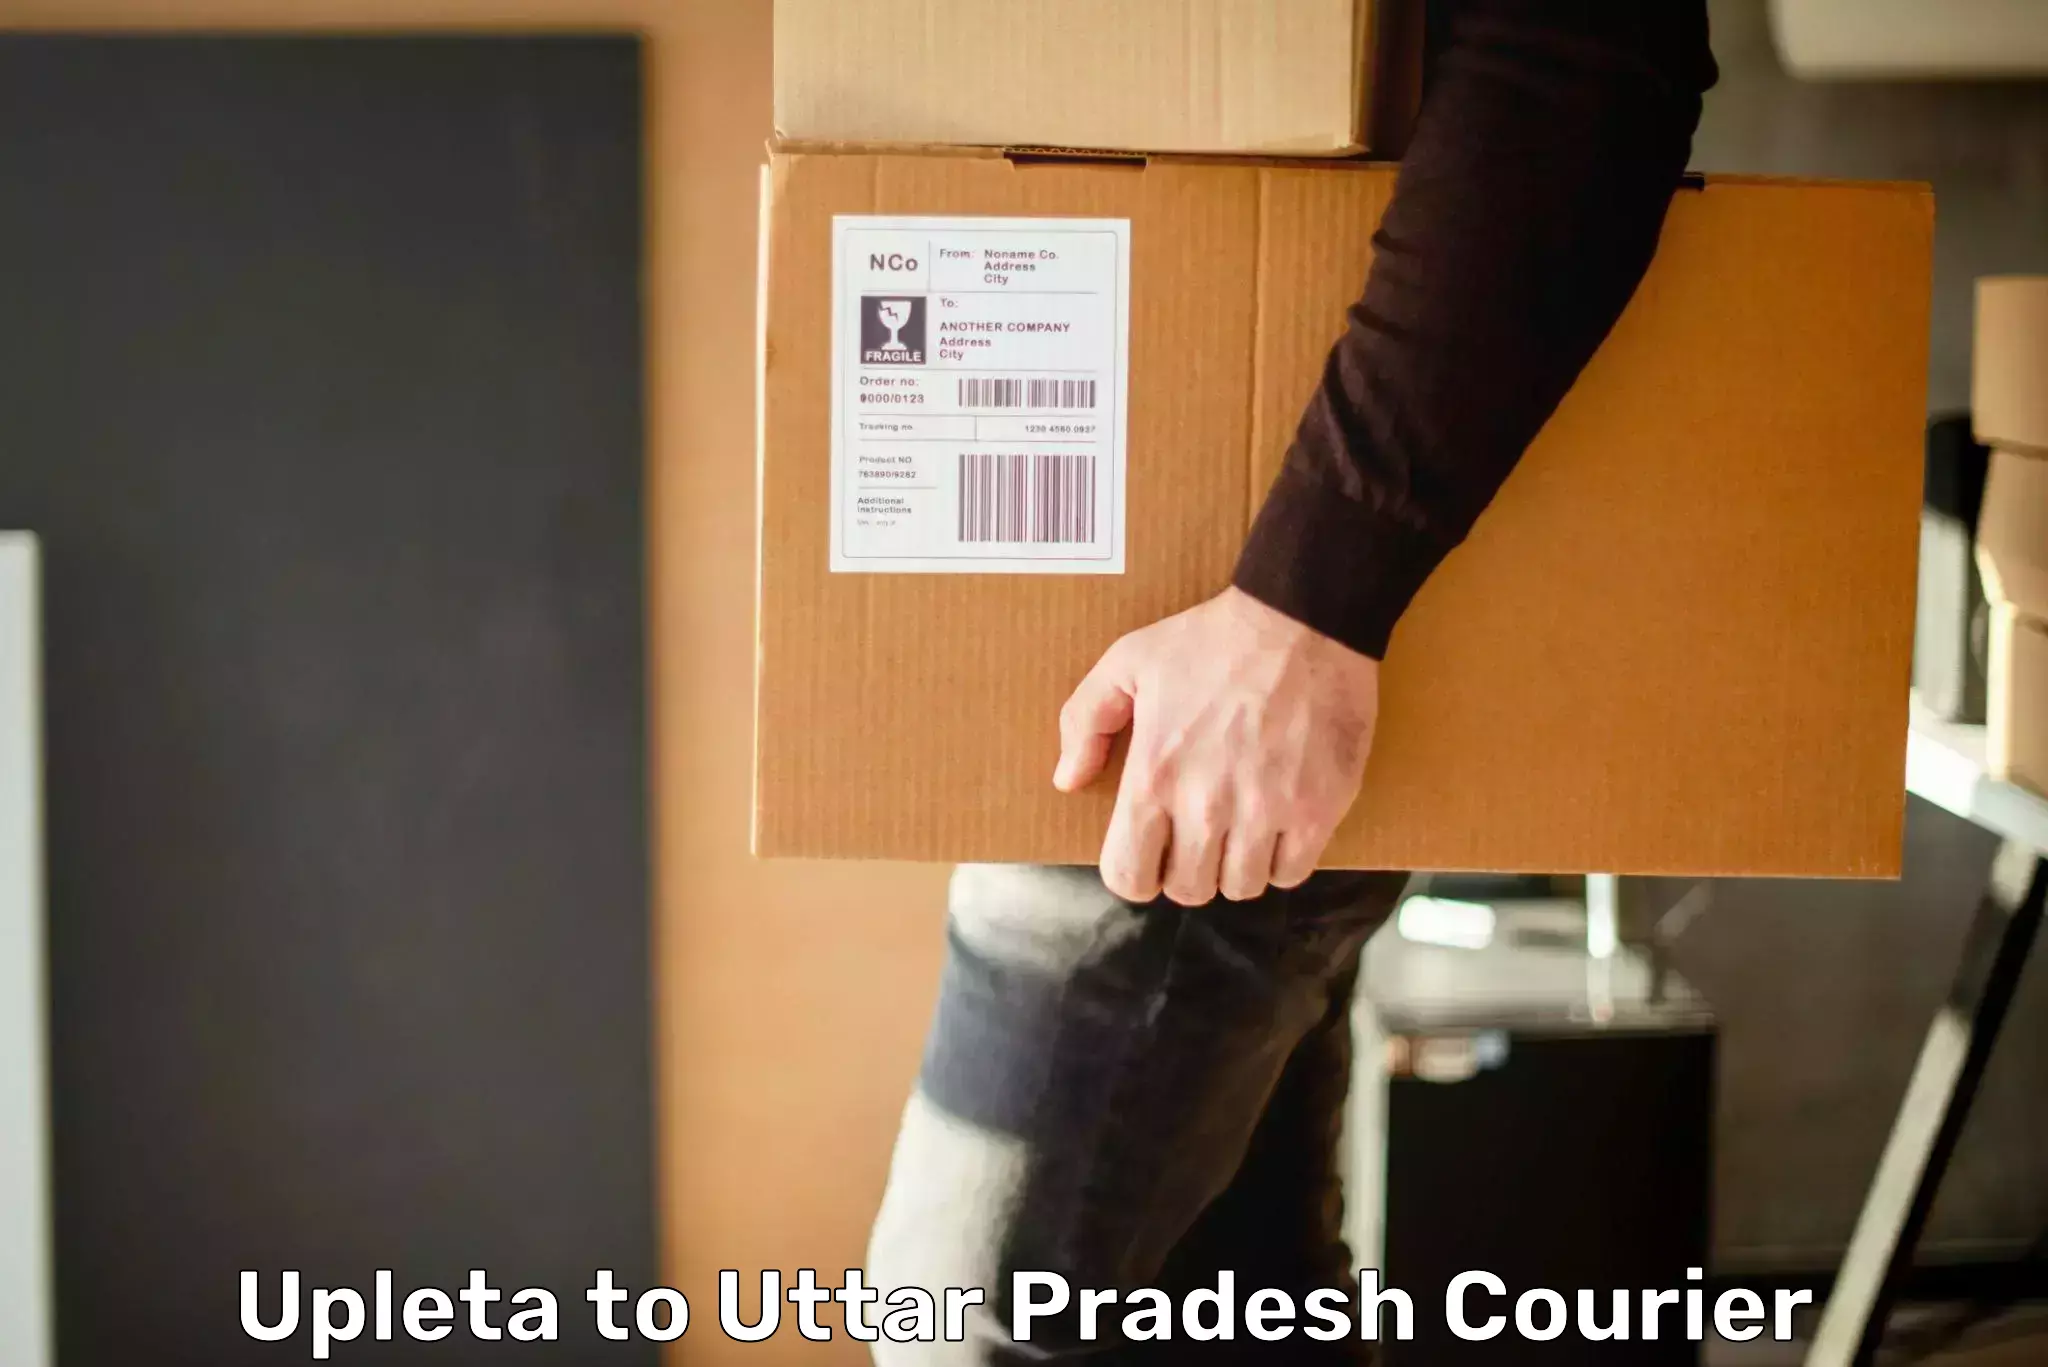 Ground shipping Upleta to Uttar Pradesh